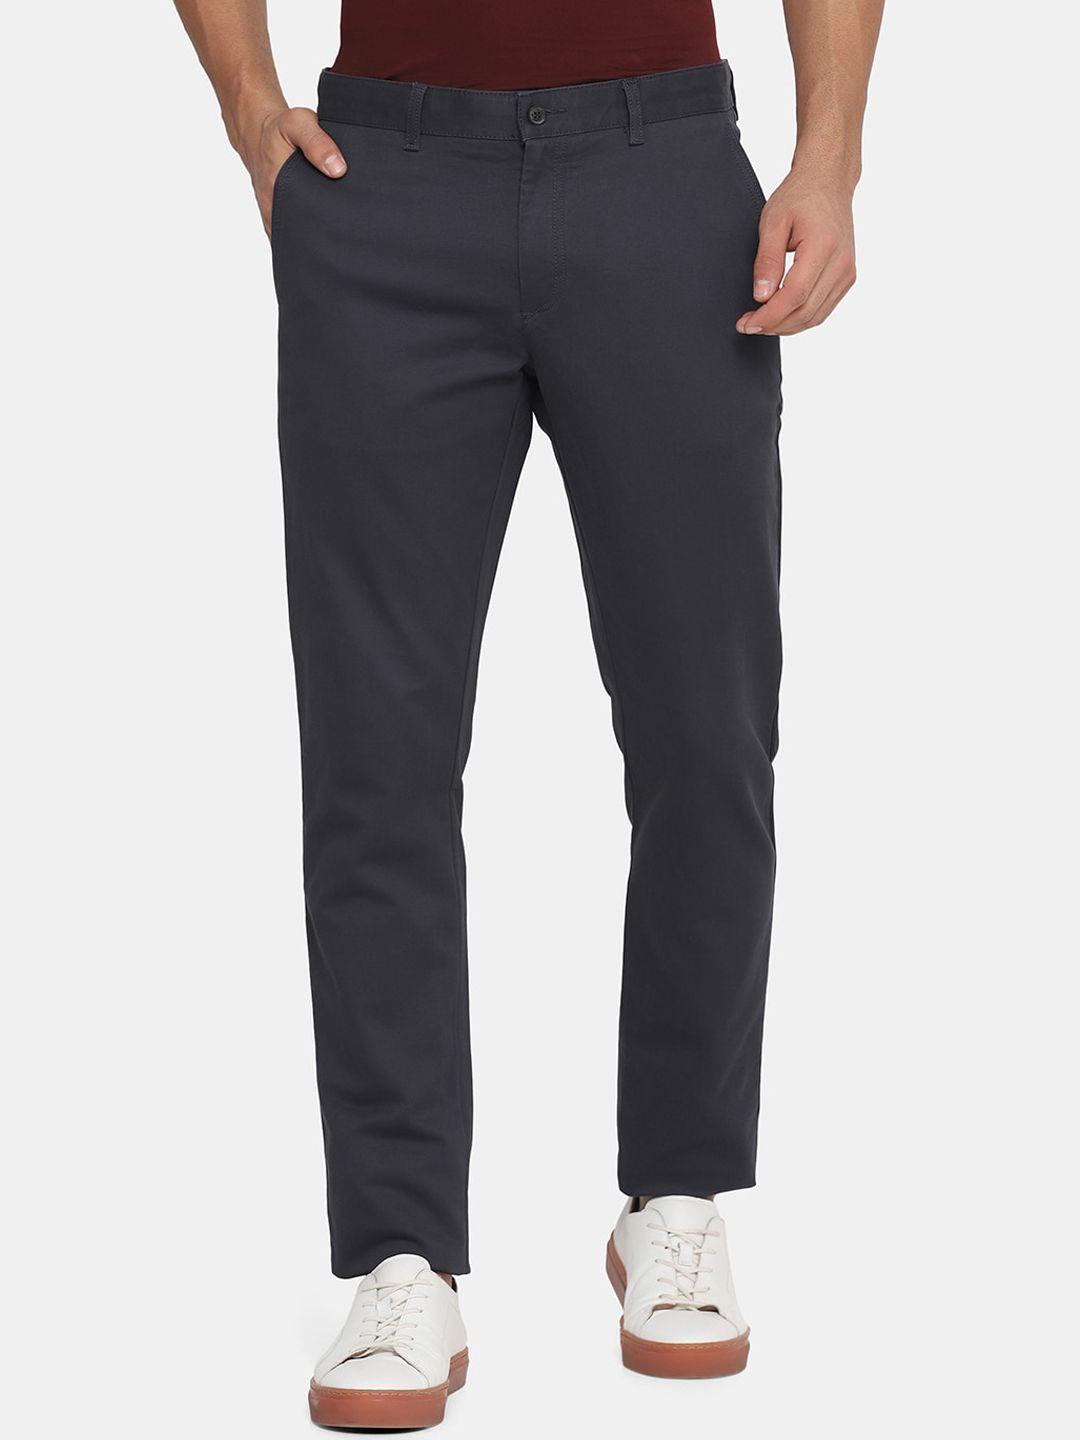 blackberrys men grey slim fit low-rise trousers